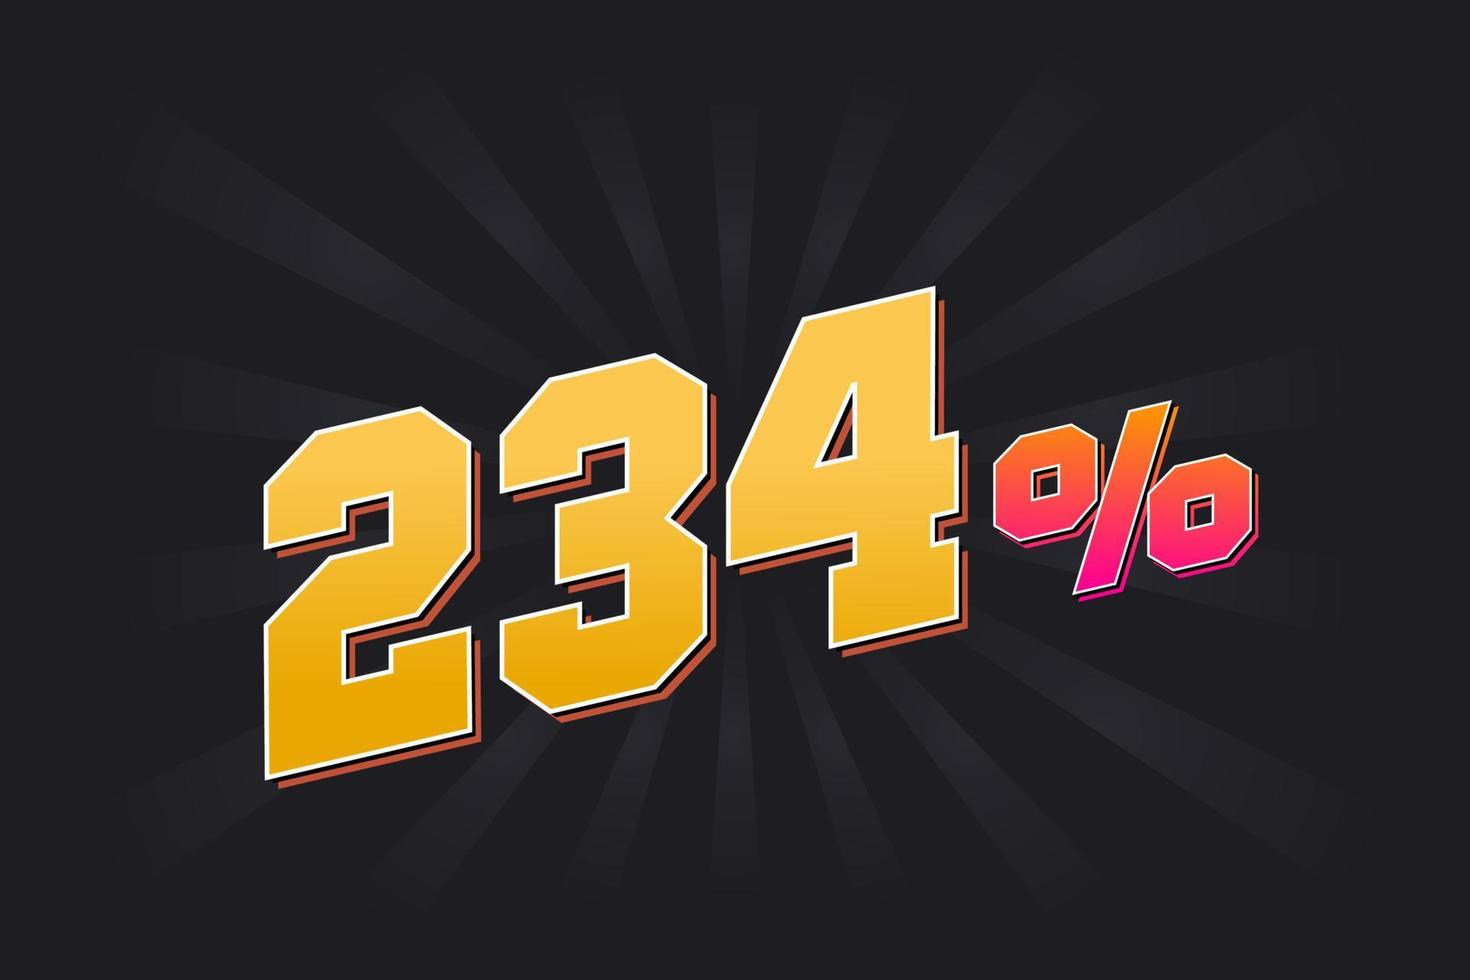 234 Rabattbanner mit dunklem Hintergrund und gelbem Text. 234 Prozent verkaufsförderndes Design. vektor